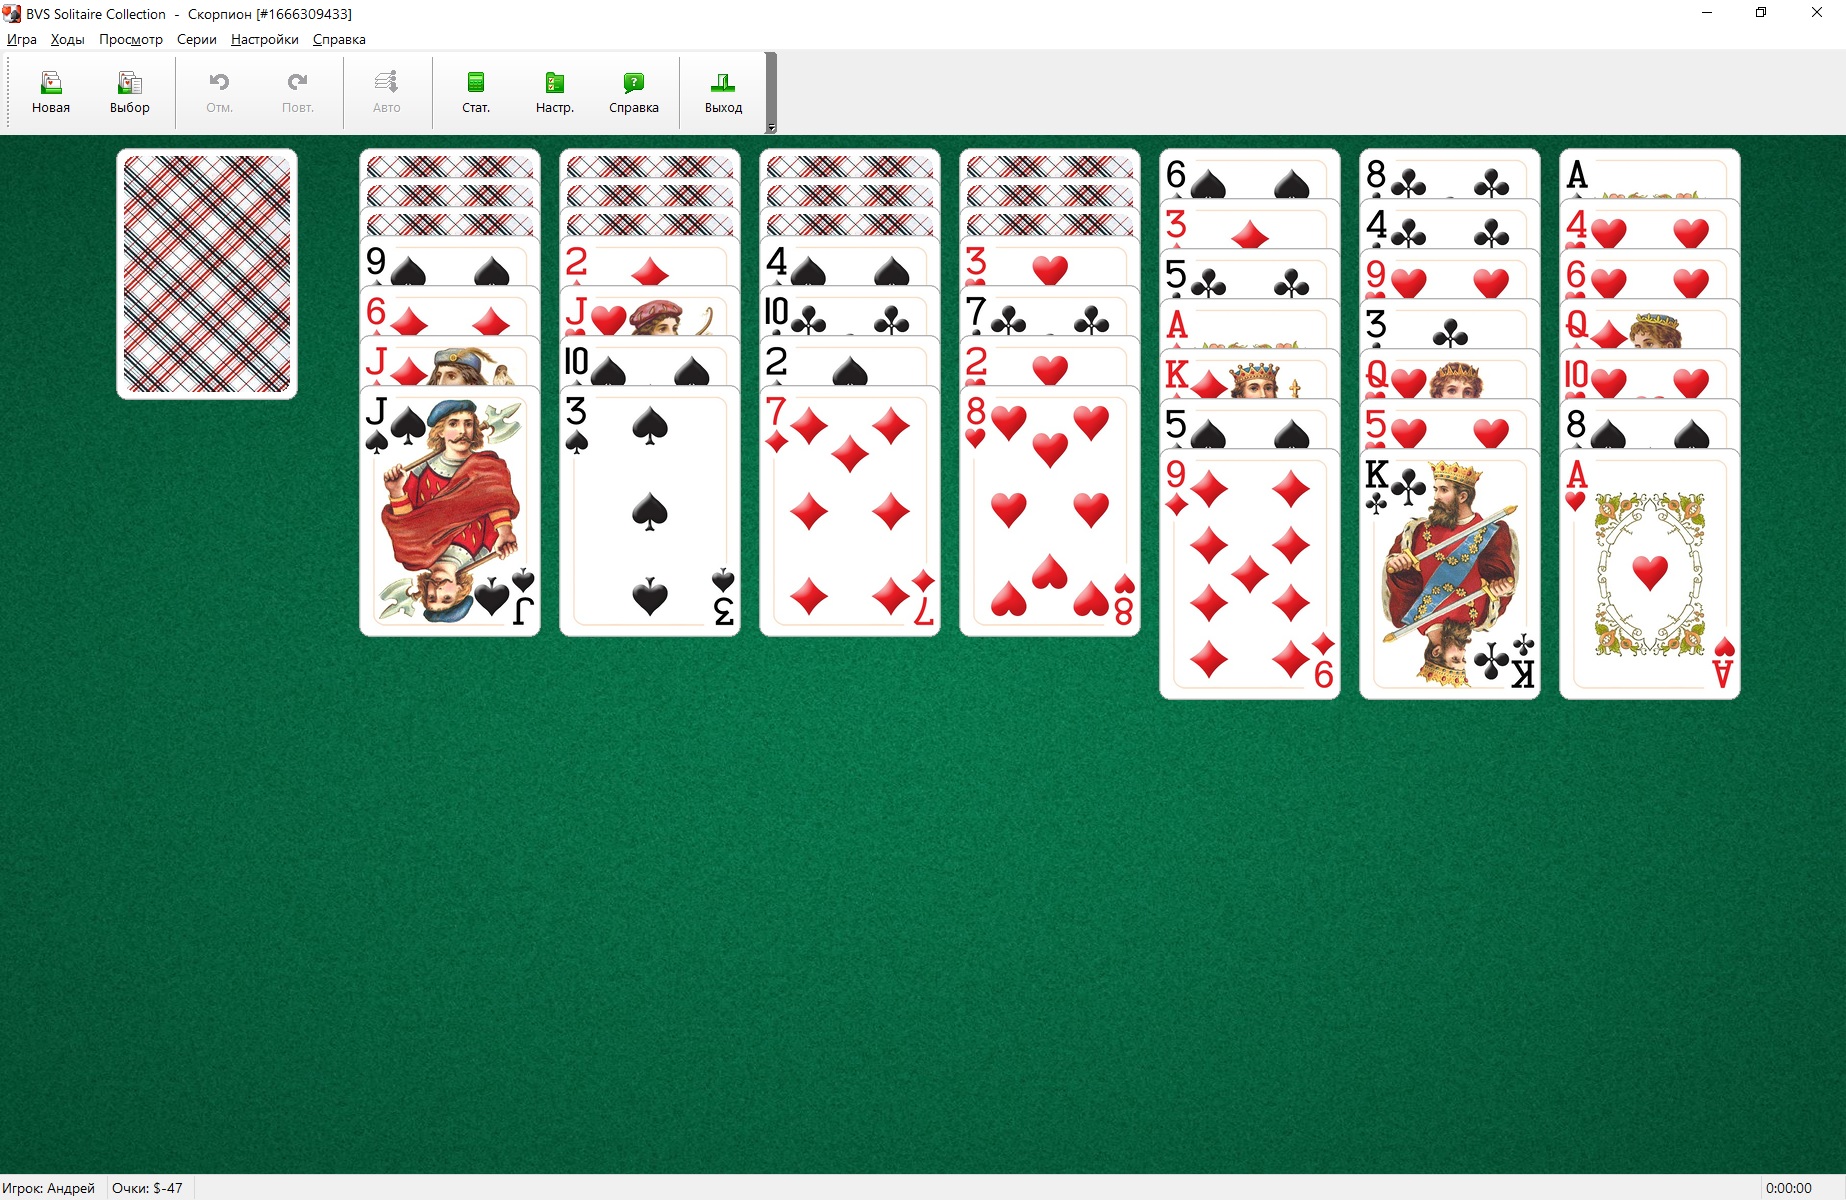 Играть карты косынка на весь экран на двоих играть в карты в дурака онлайн с компьютером